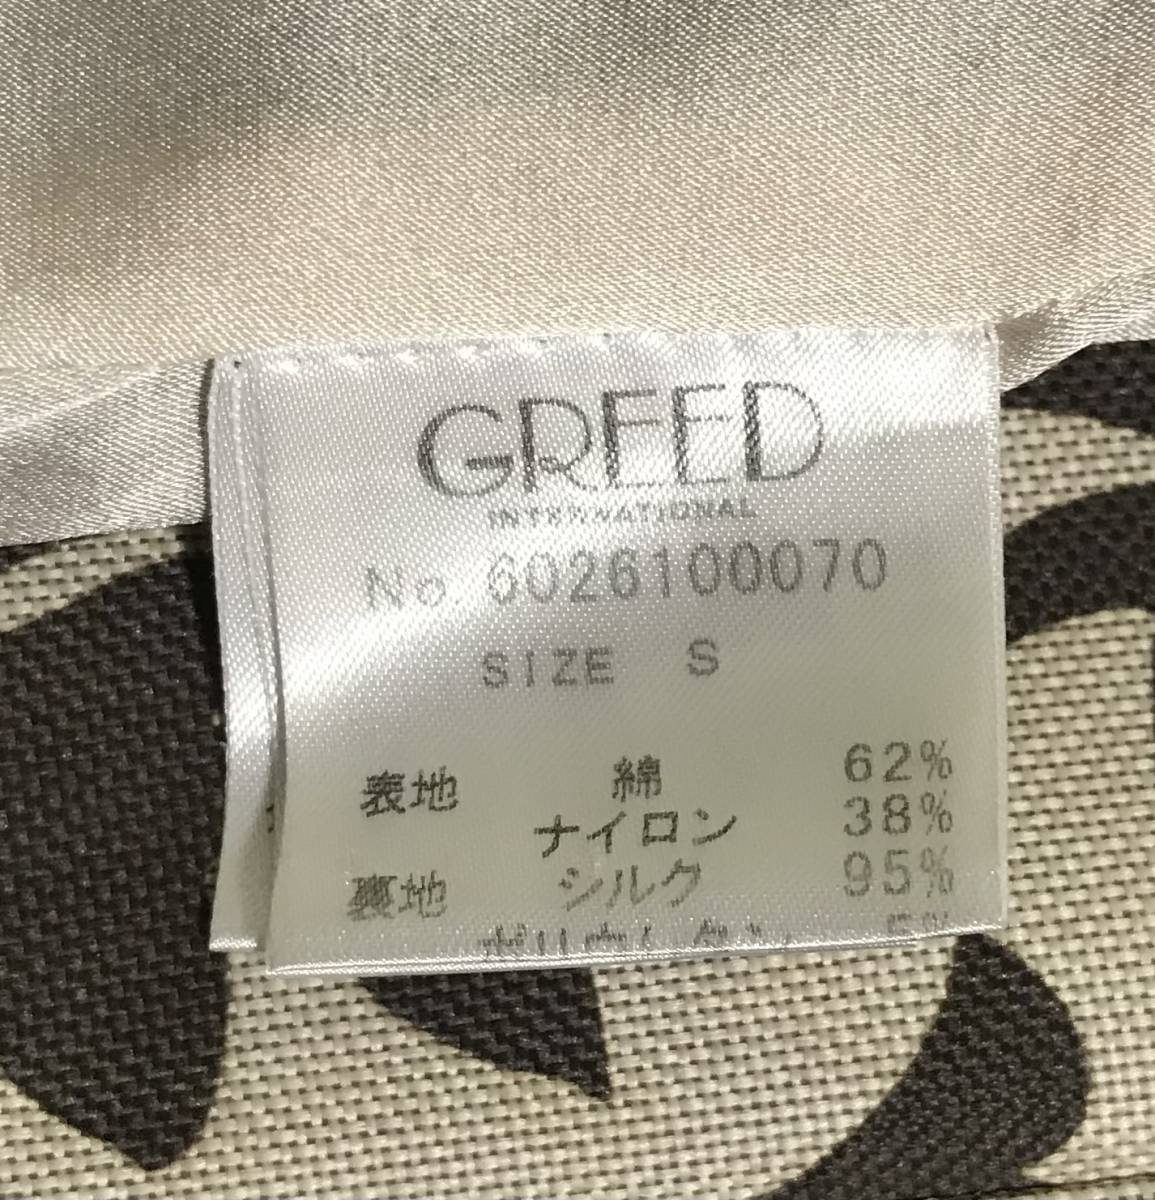  обычная цена 4 десять тысяч иен ранг *GREED international premium твид блуза S размер Chanel использование твид фирма Lynn тонн производства ясная погода. день o клетка .